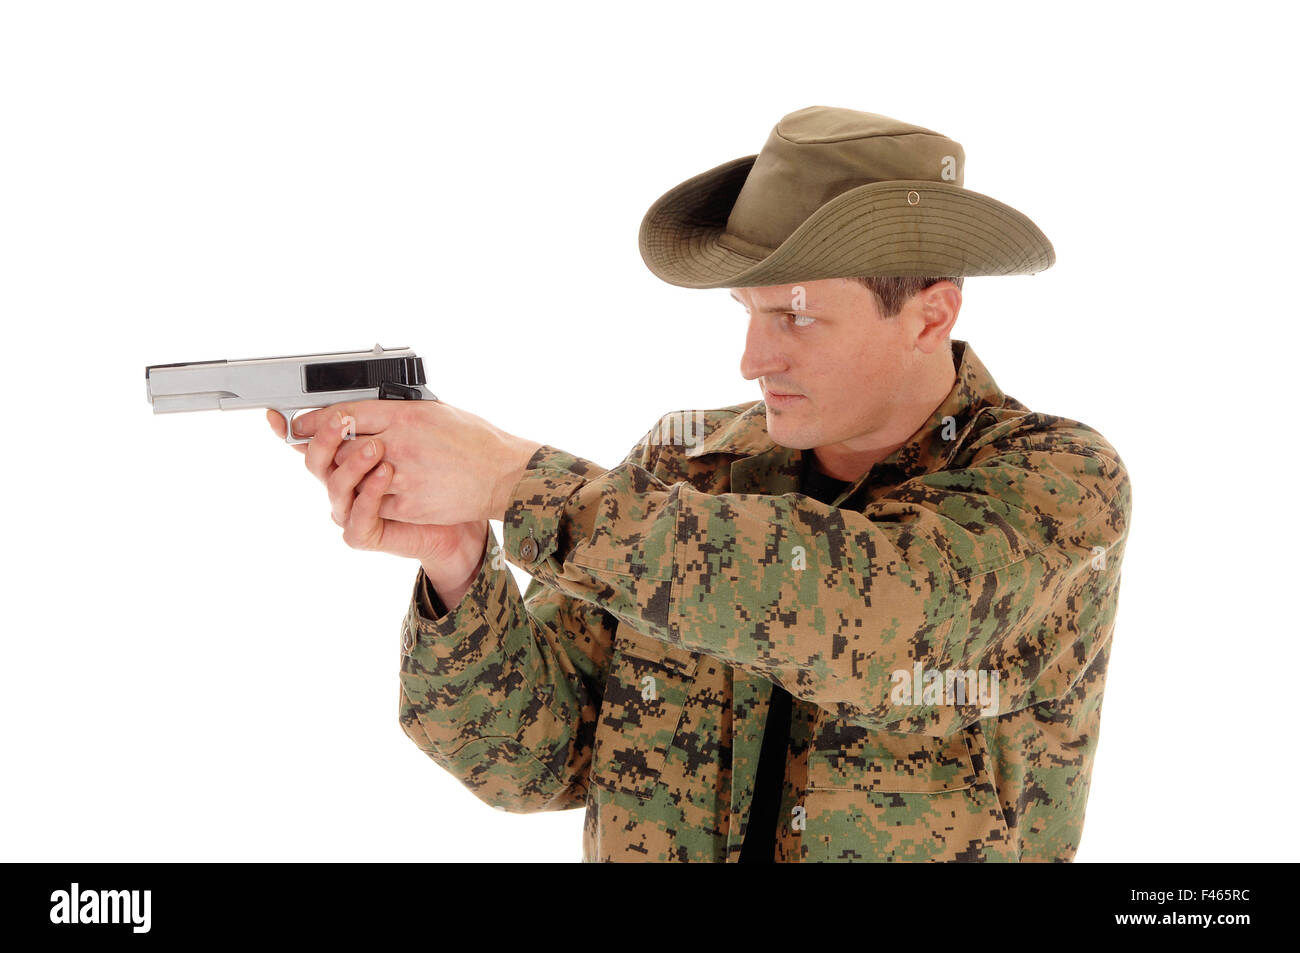 Soldat zeigt eine Pistole. Stockfoto